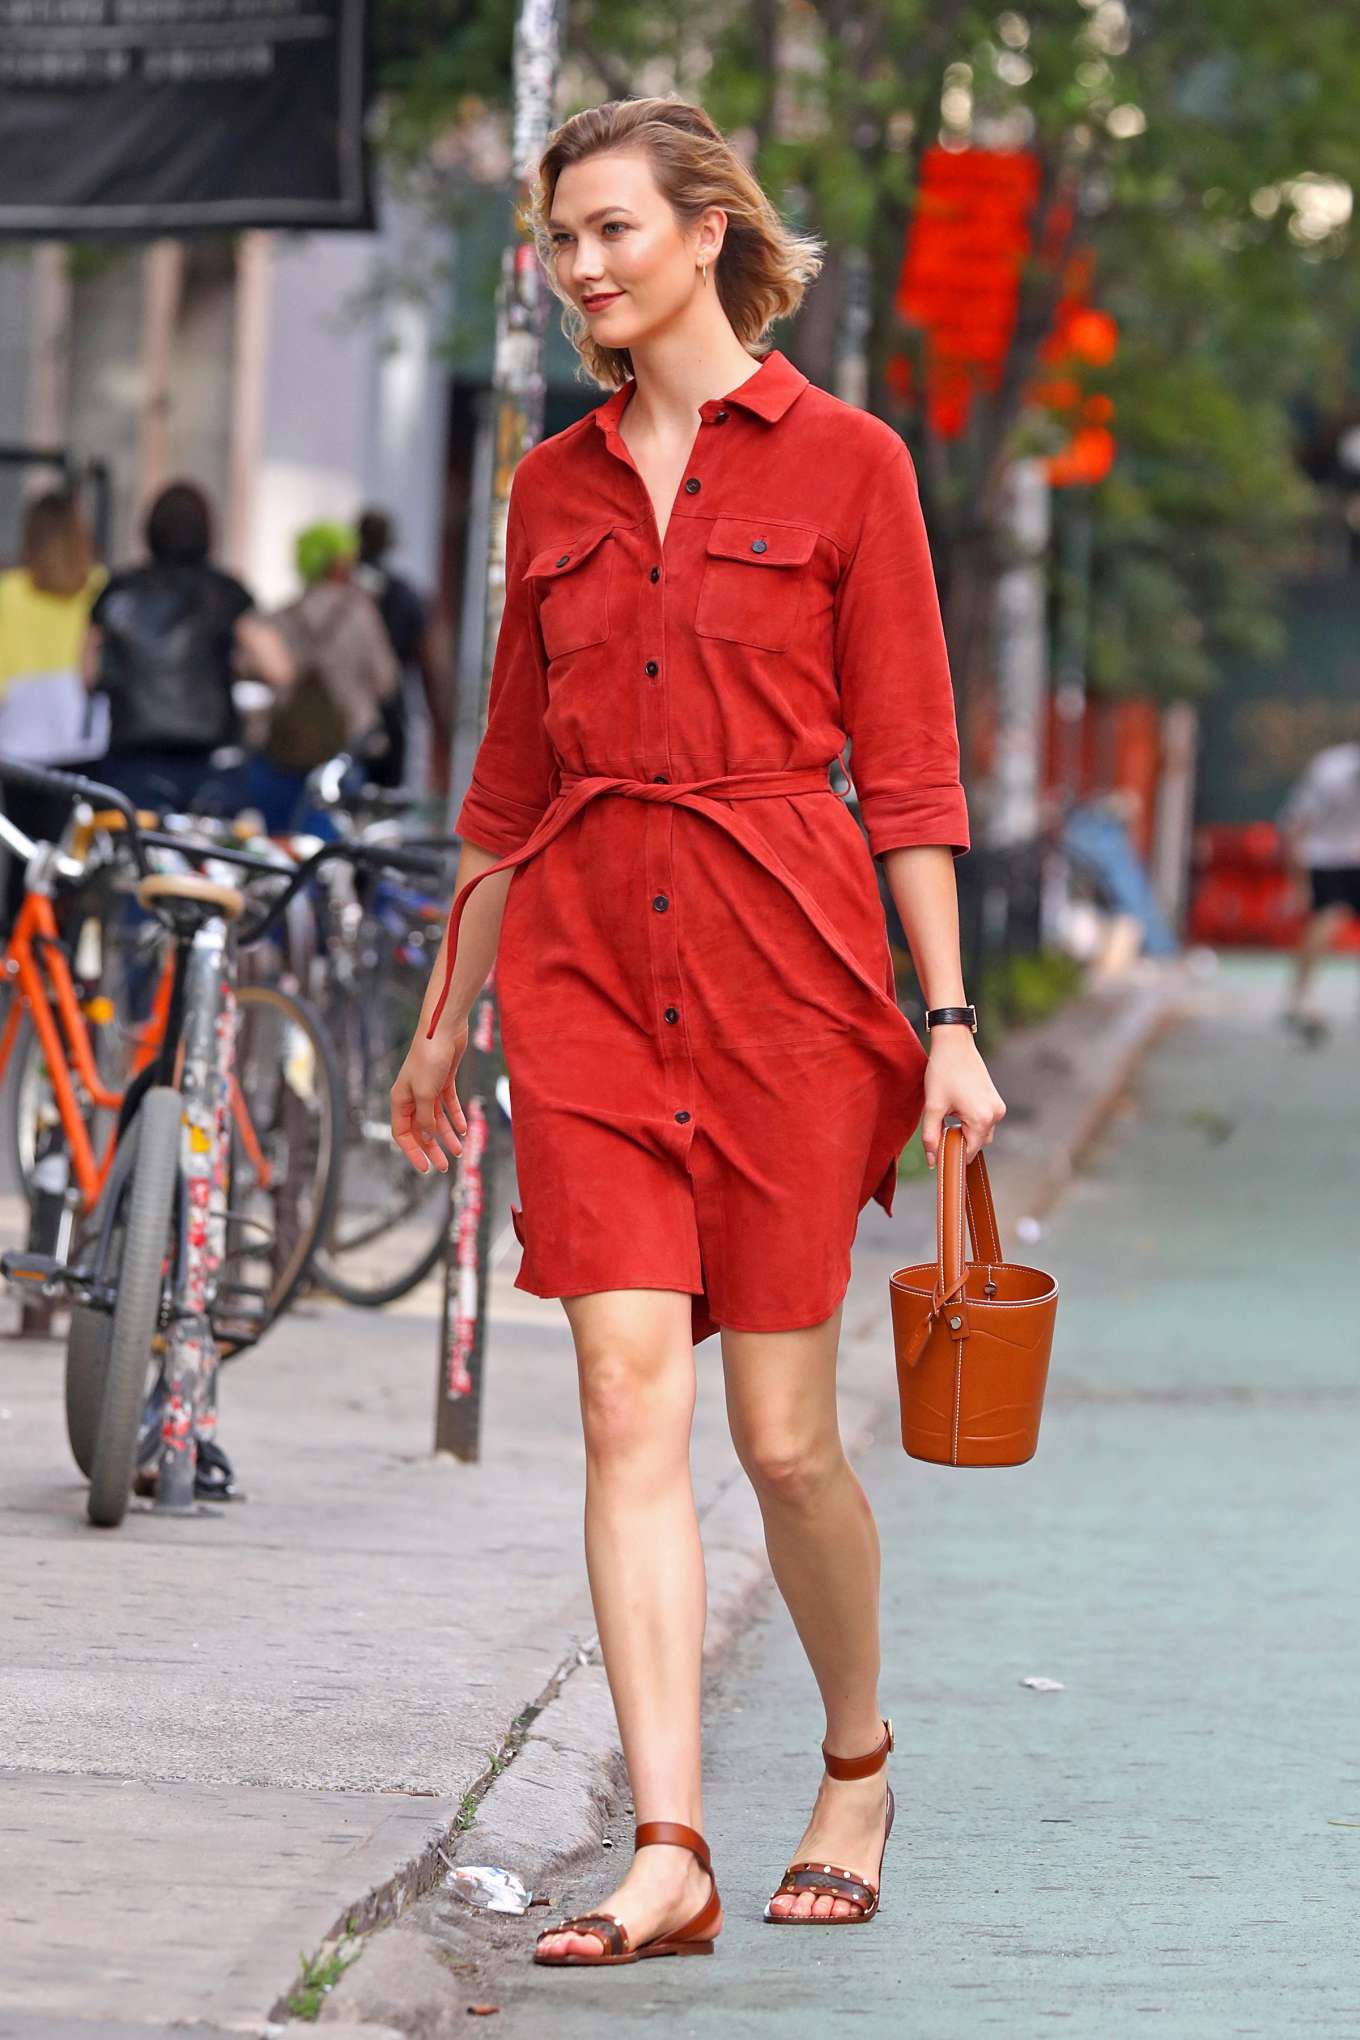 Karlie Kloss Wearing A Red Dress 23 Gotceleb